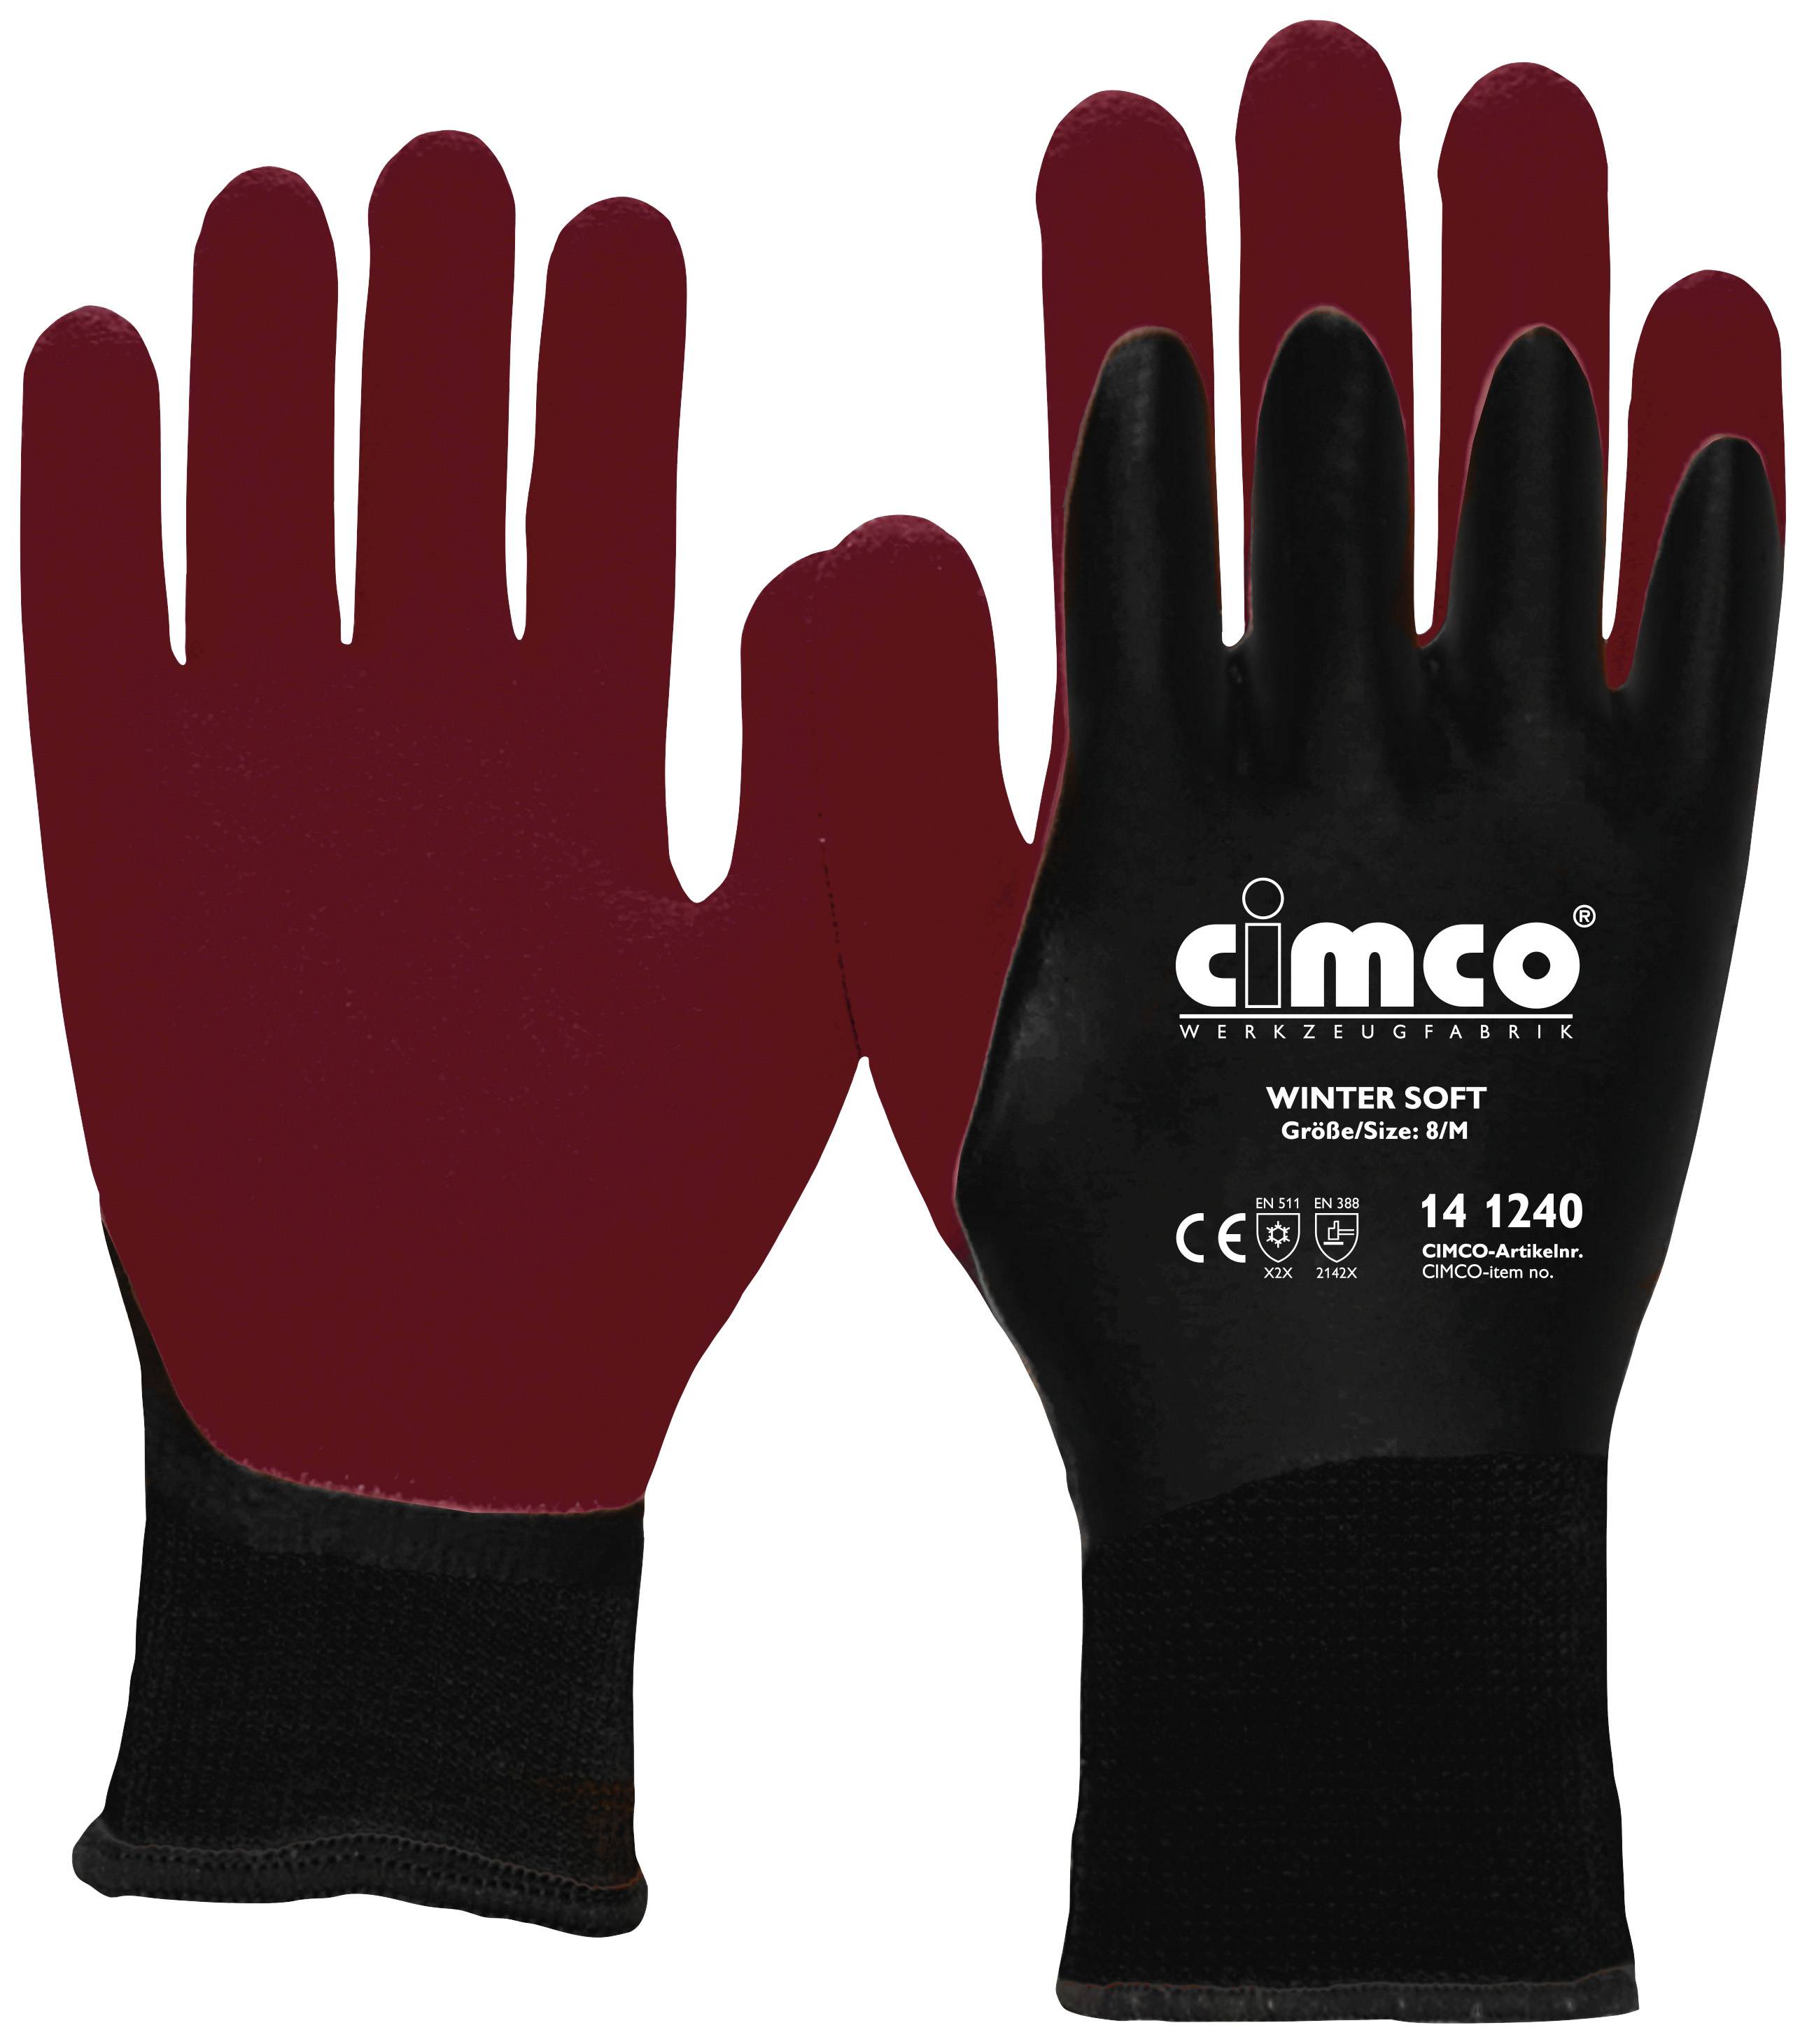 Cimco Winter Soft dunkelrot/schwarz 141241 Vinyl Arbeitshandschuh Größe (Handschuhe): 9, L EN 388 1